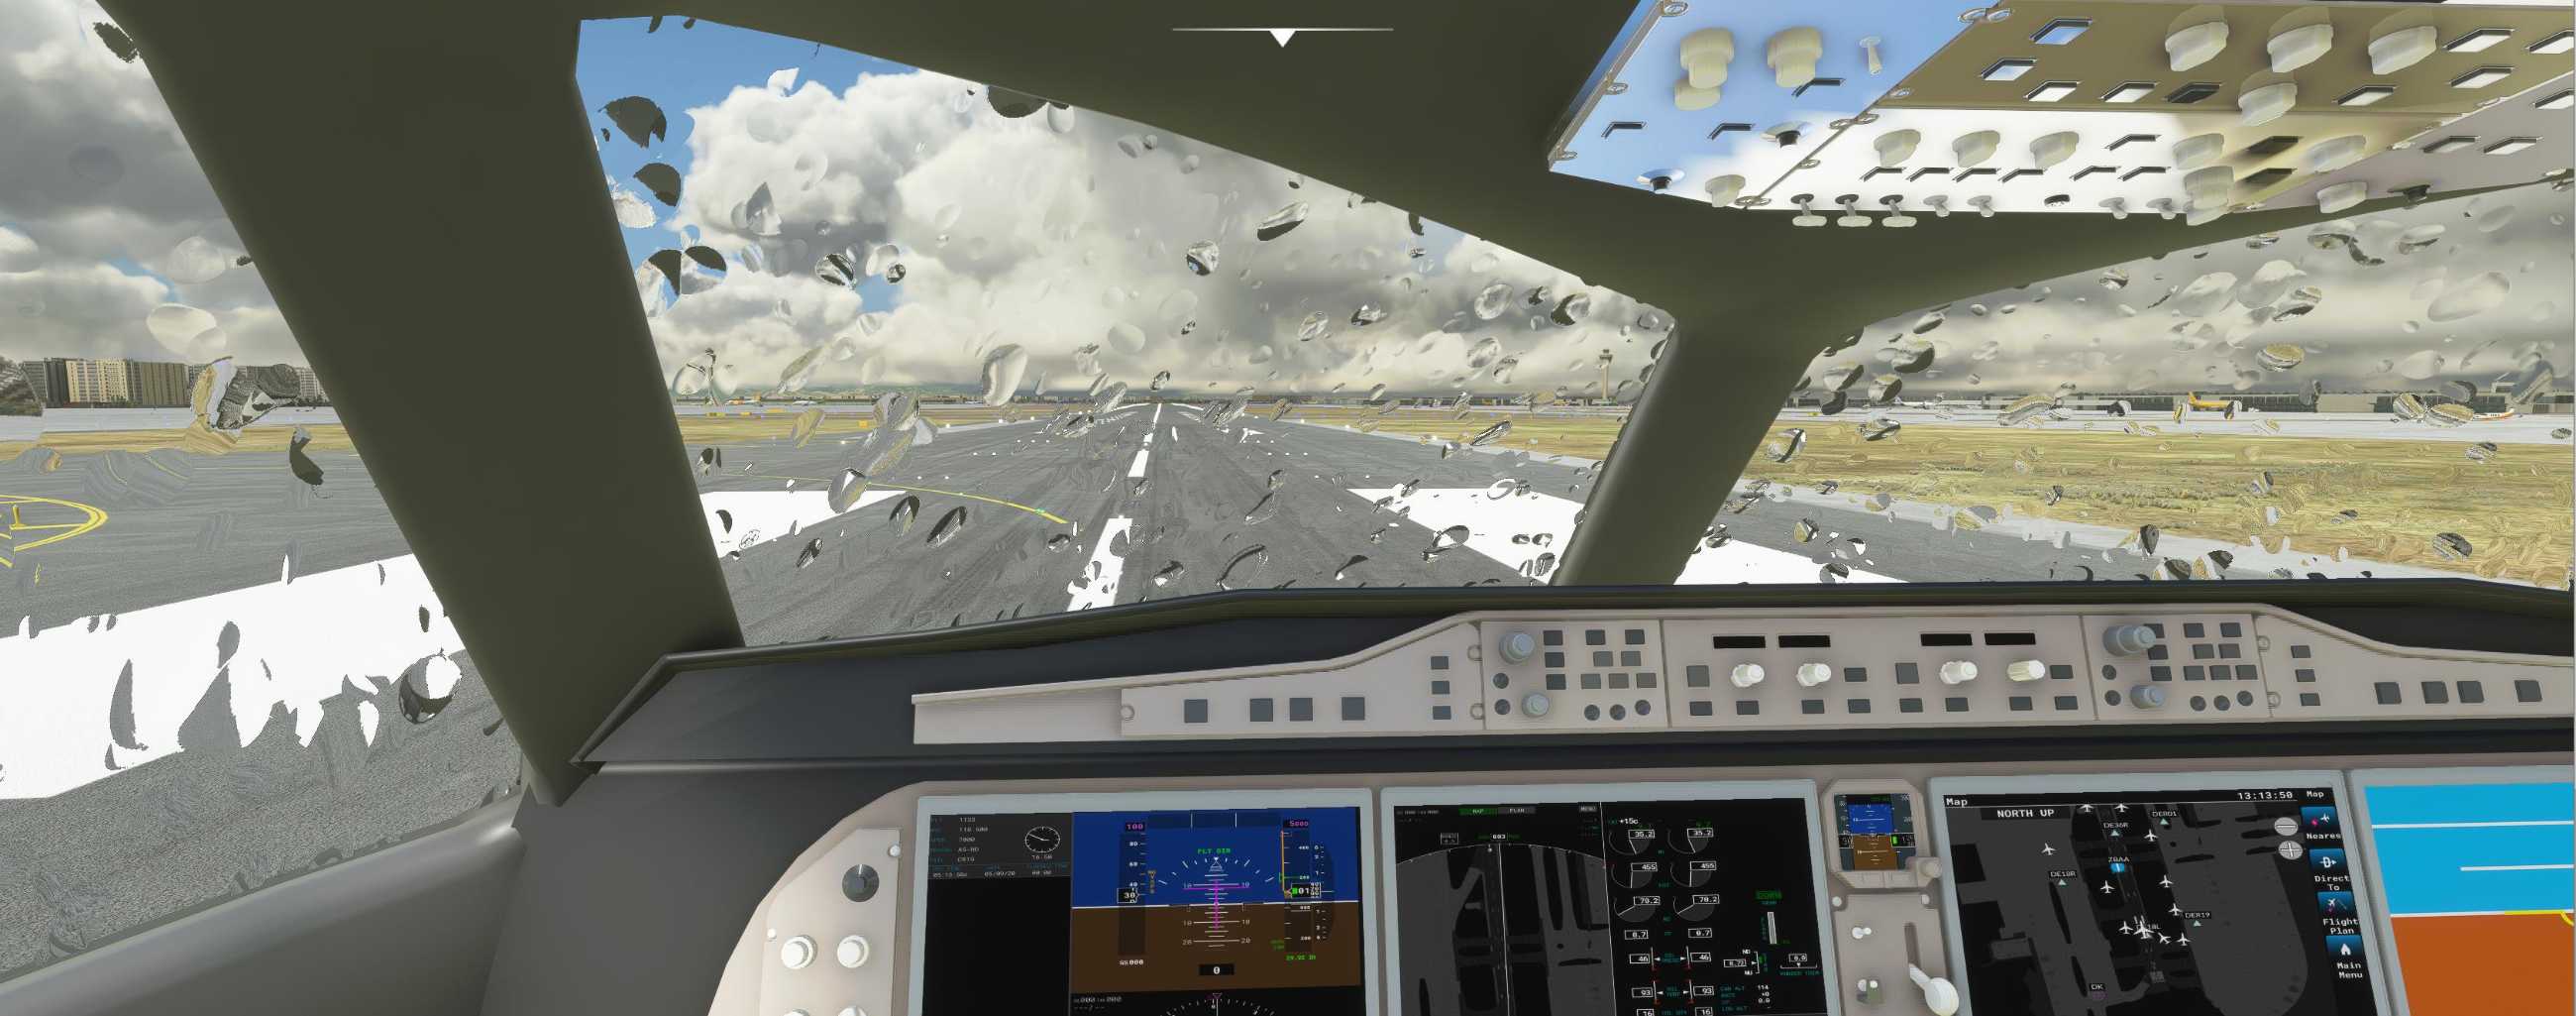 FYCYC-C919 国产大飞机机模 微软模拟飞行演示-2482 